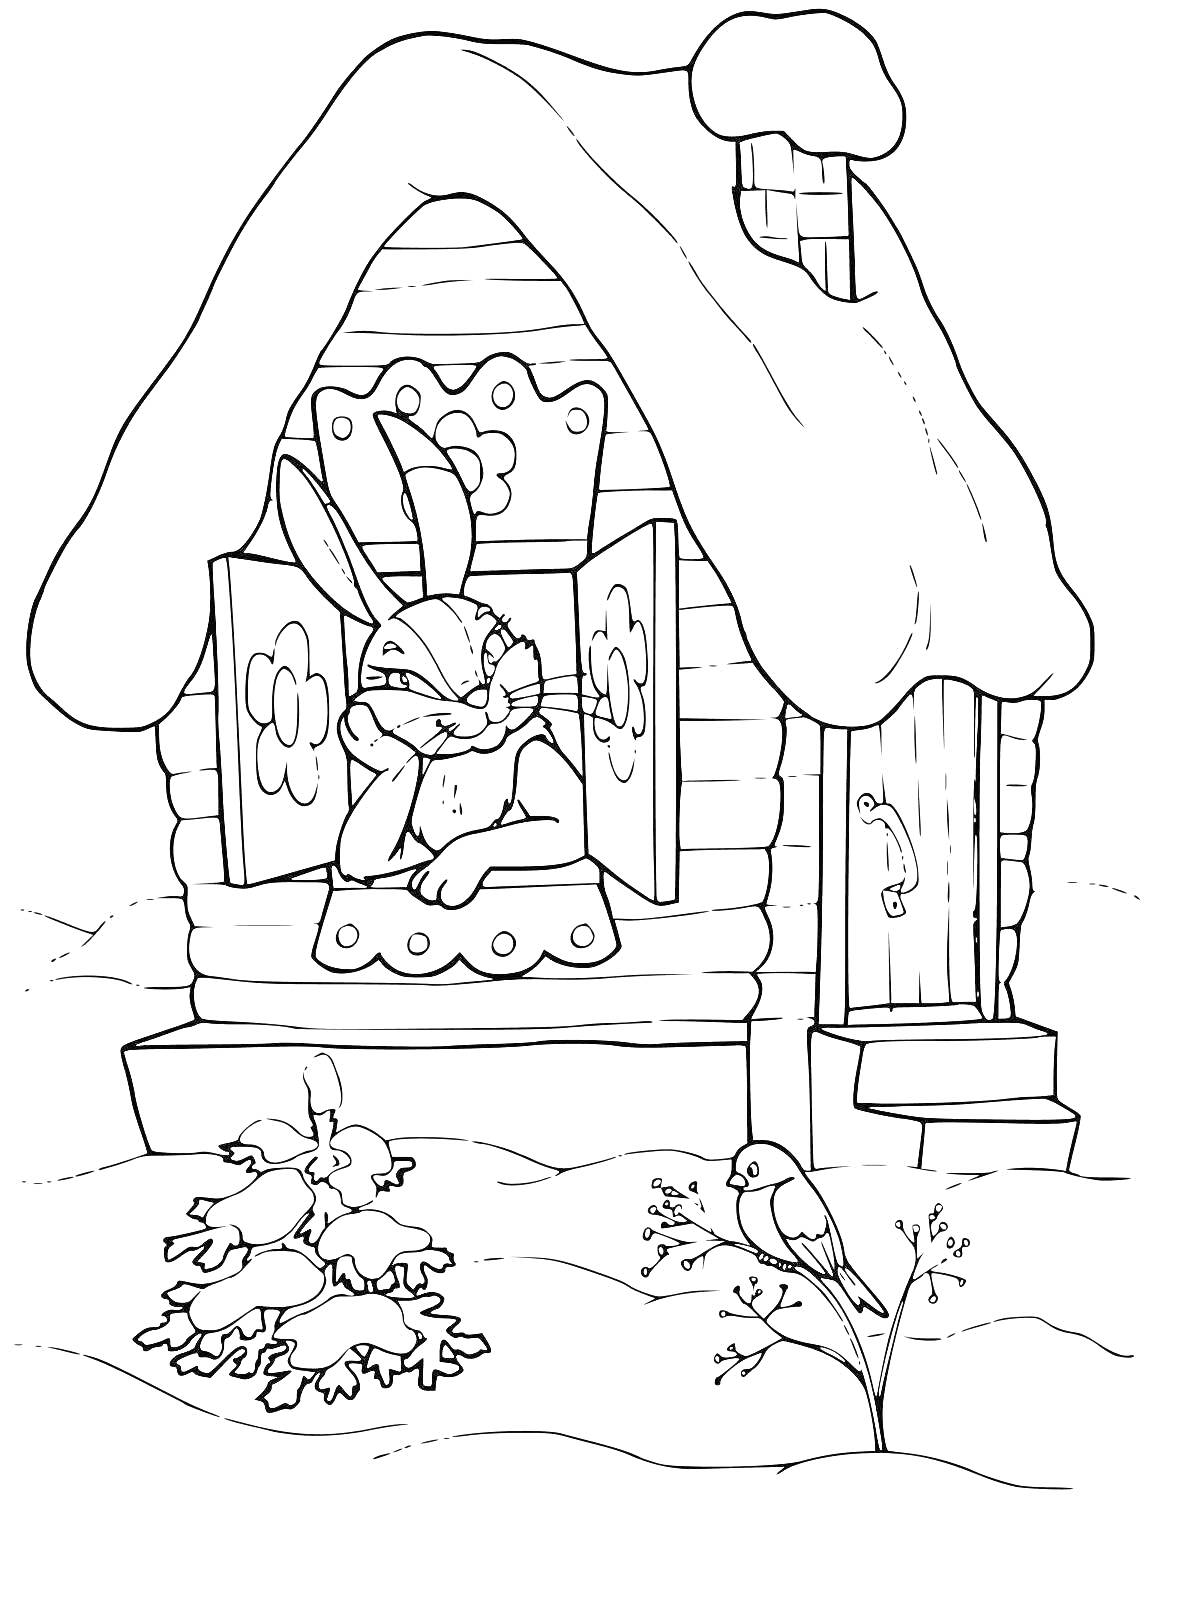 Раскраска Заяц в деревянном домике с деревянной трубой и птица на кусте